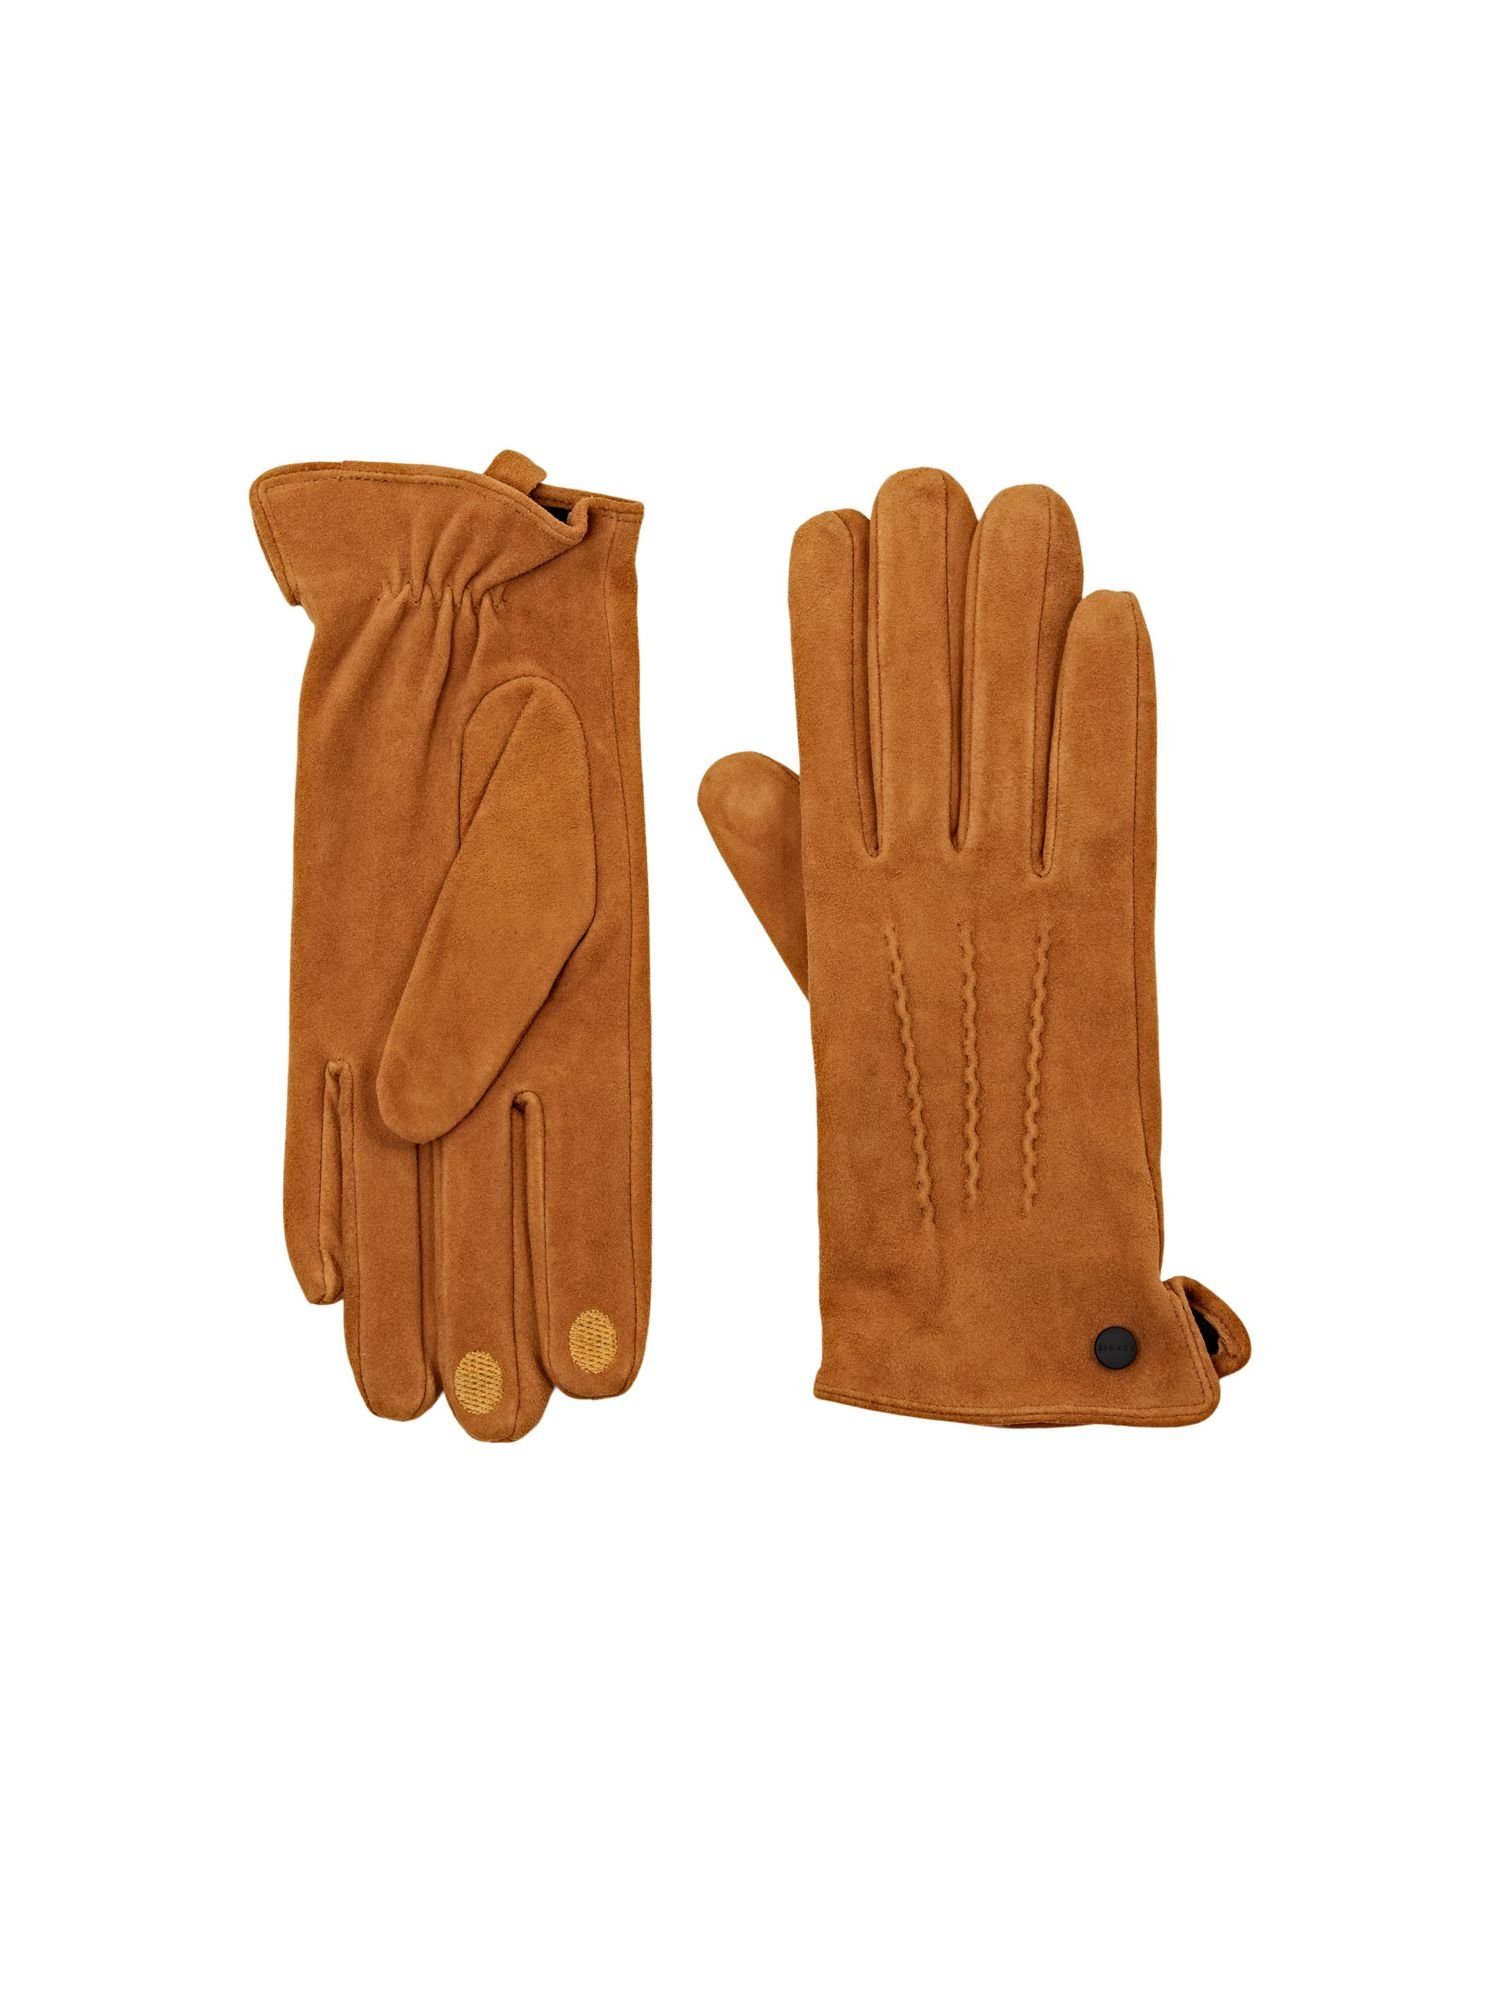 Rauleder-Handschuhe Lederhandschuhe mit CARAMEL Esprit Touchscreen-Funktion